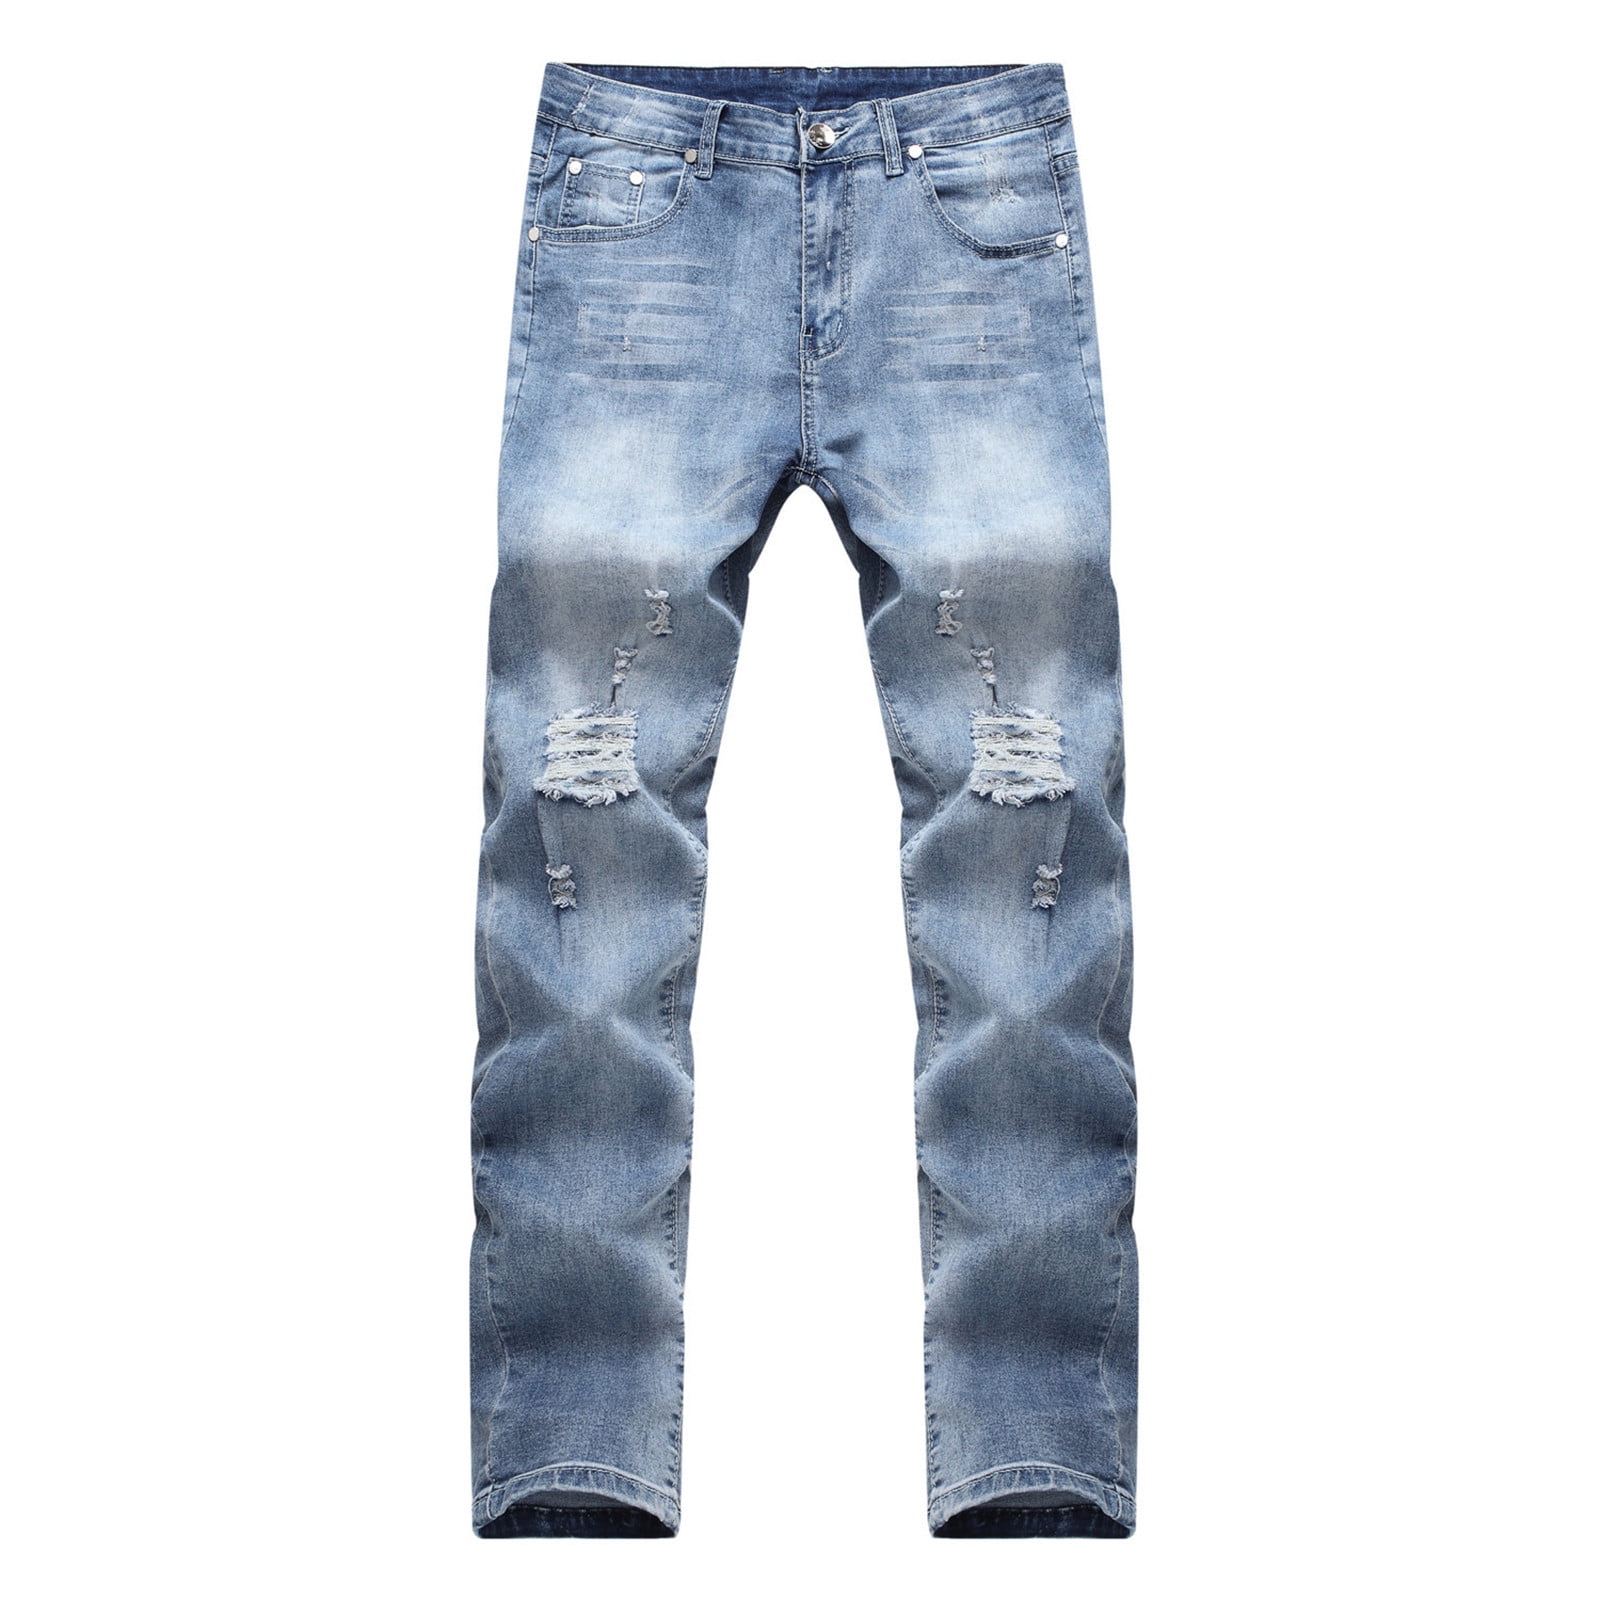 Biker Jeans for Rock Designer Fit, Men Jeans Jeans Slim Men\'s Biker Revival, Comfy Ripped Pants Distressed Stretch